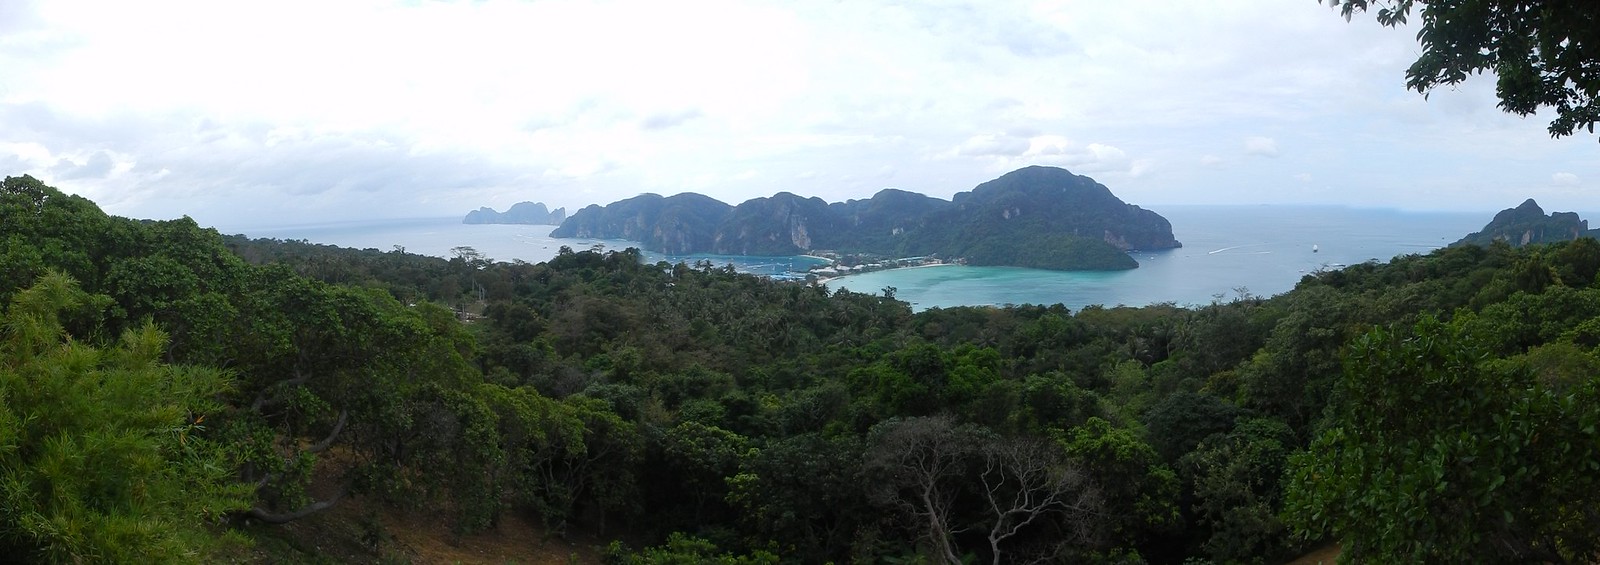 Rumbo a Ao Nang: navegando entre gigantes de roca - TAILANDIA POR LIBRE: TEMPLOS, ISLAS Y PLAYAS (6)